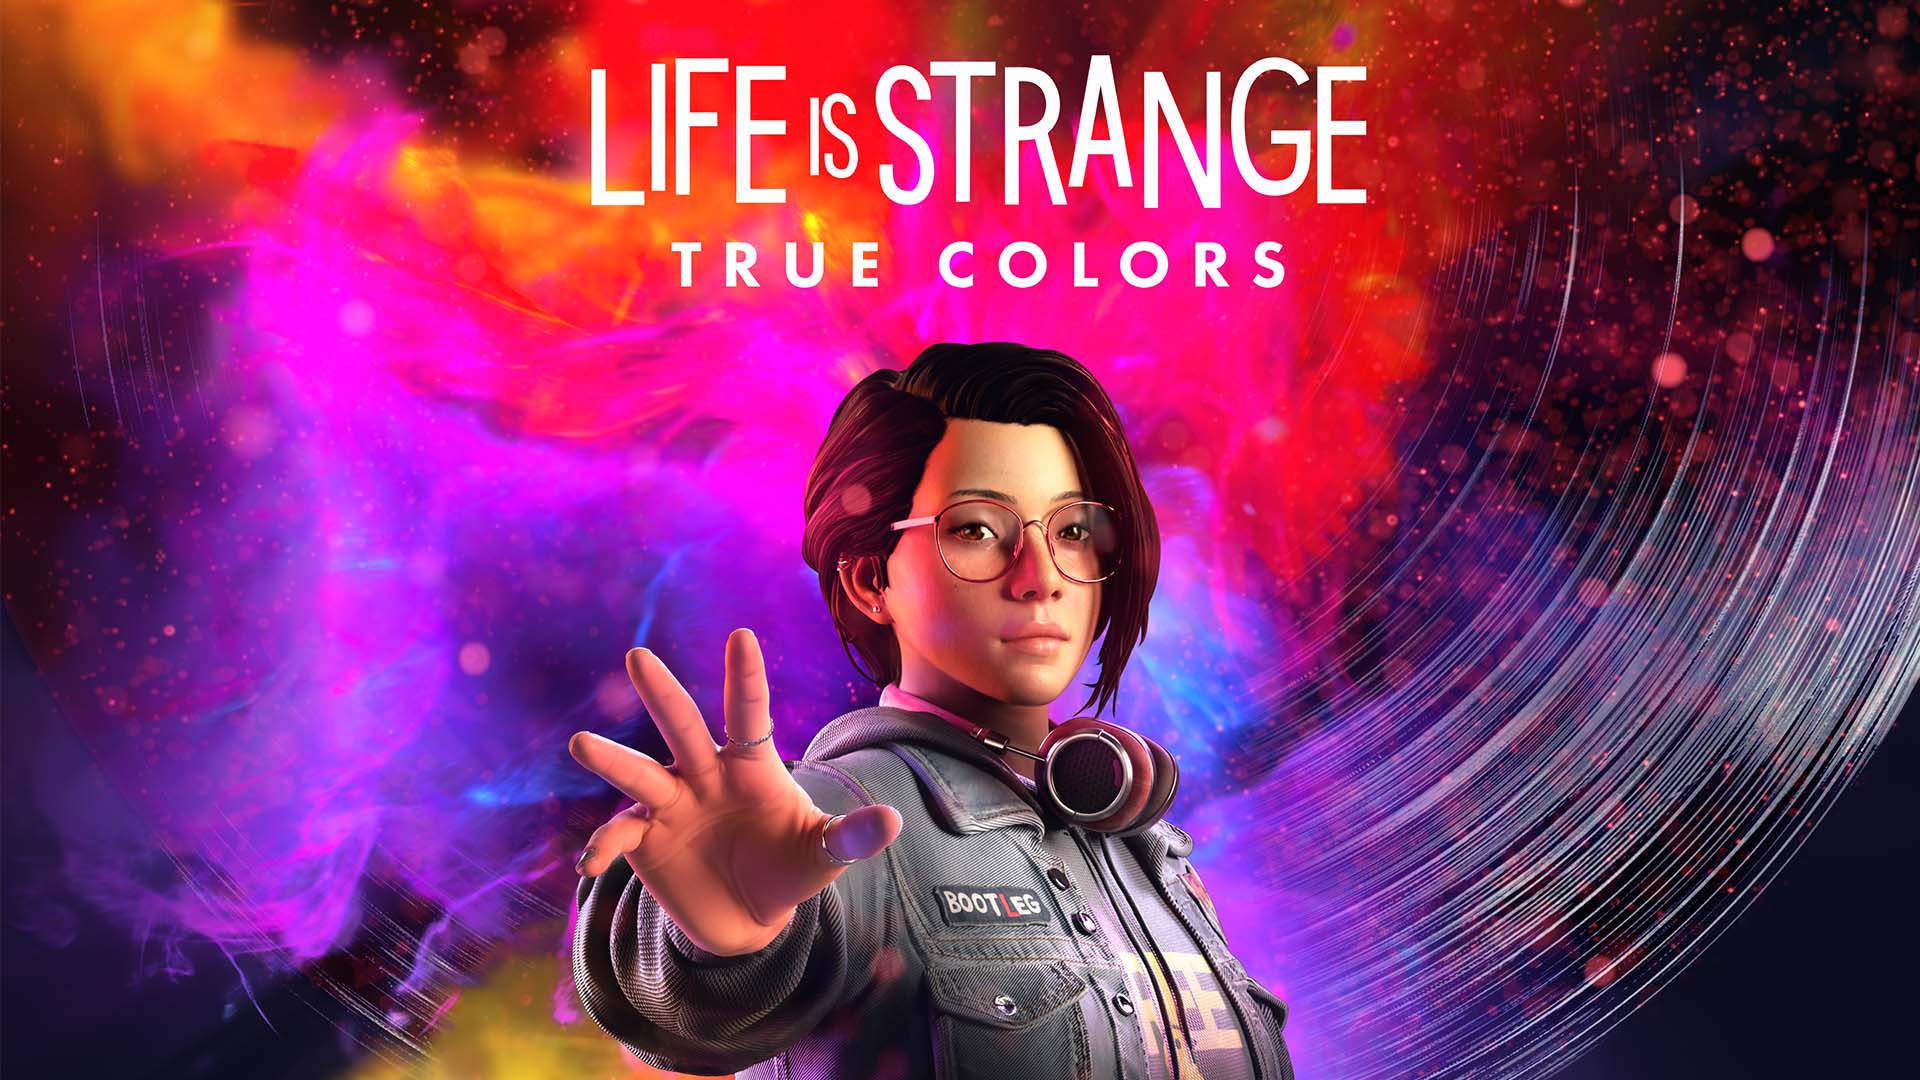 Visuel principal de Life is Strange: True Colors : Alex Chen prend la pose sur fond coloré